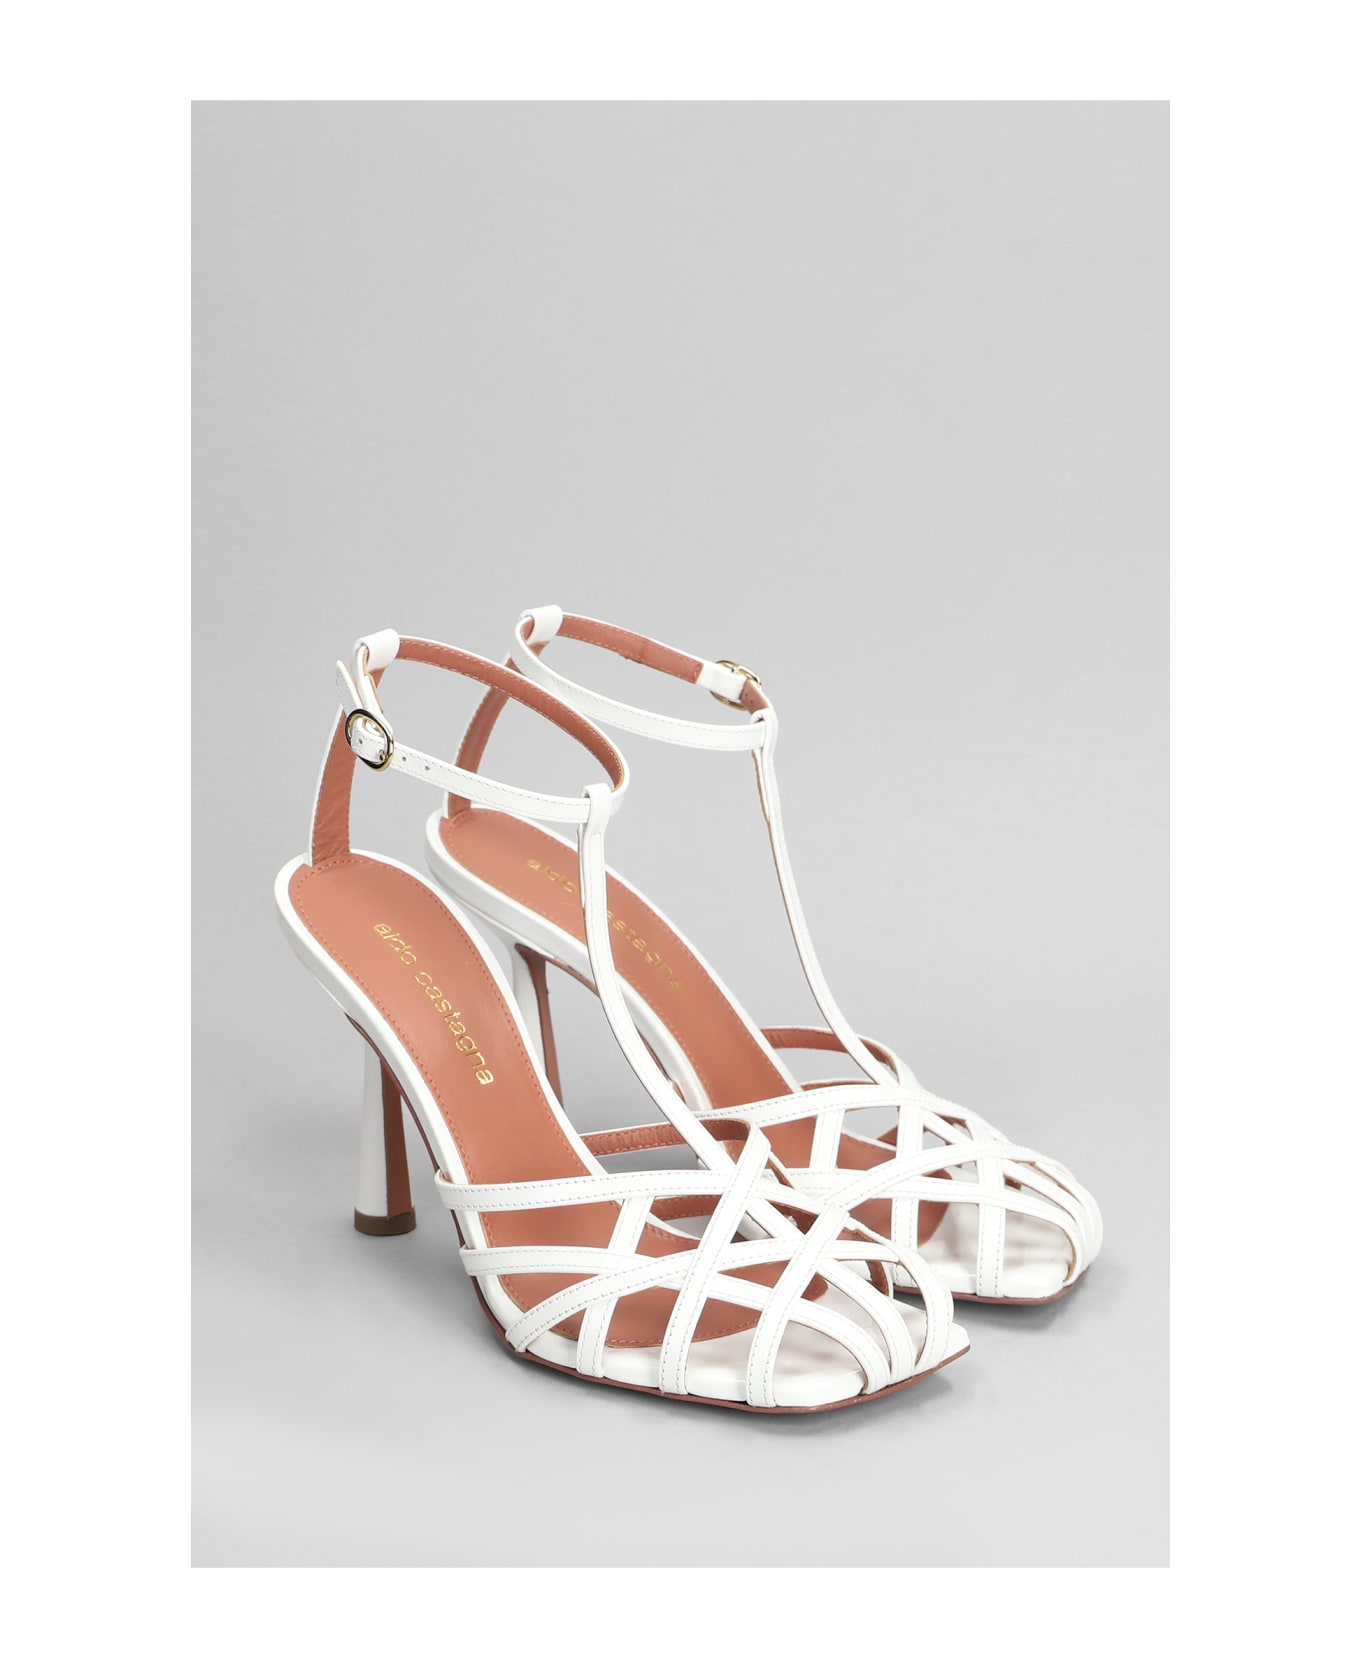 Aldo Castagna Lidia Sandals In White Patent Leather - white